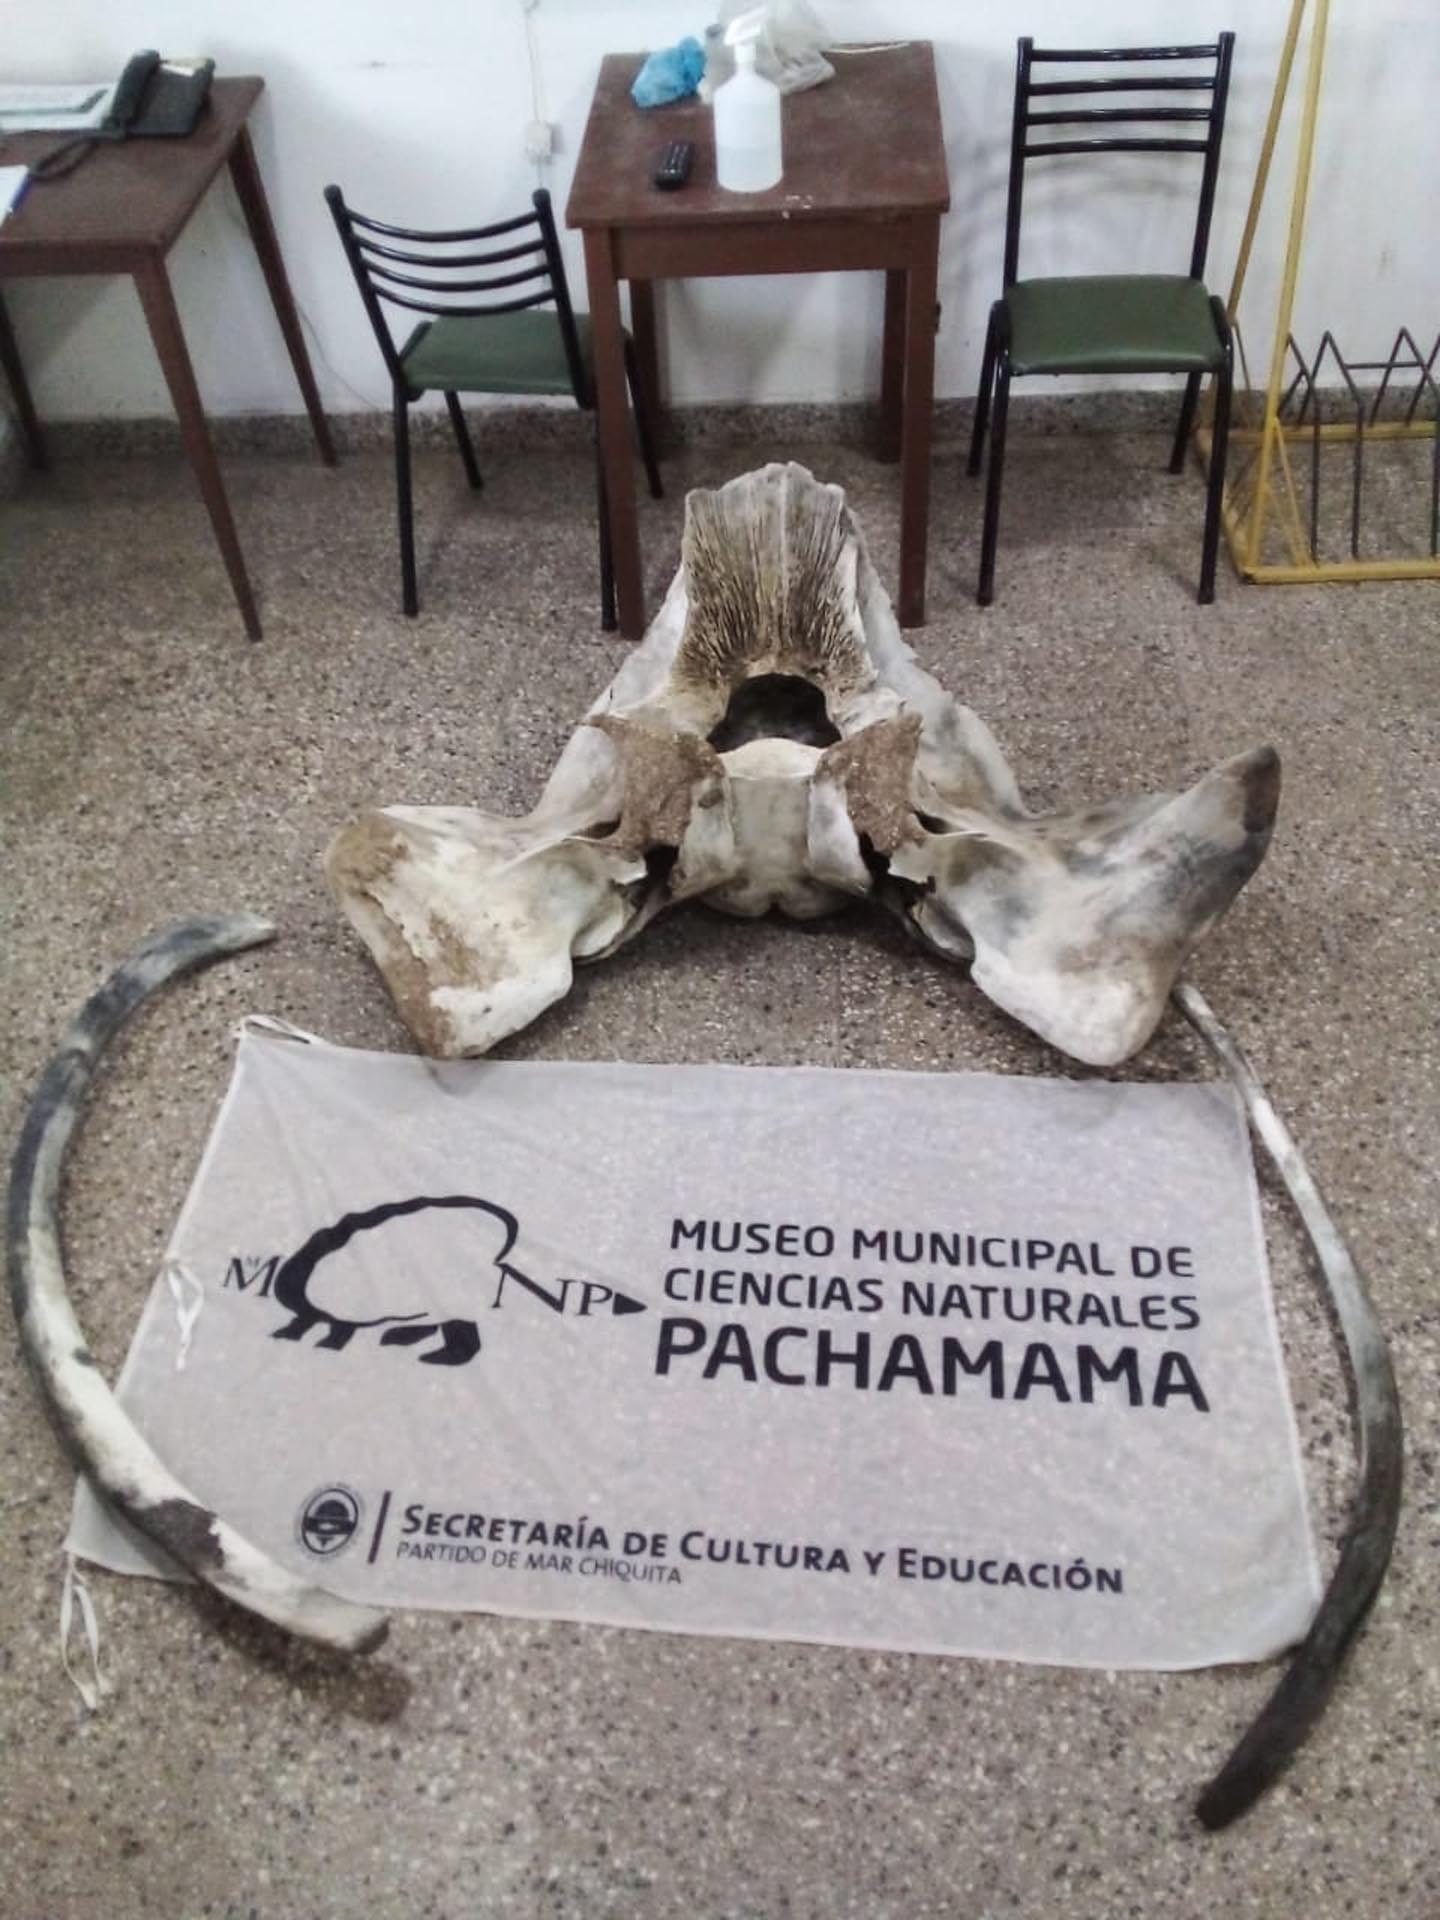 Museo Municipal de Ciencias Naturales Pachamama de Santa Clara